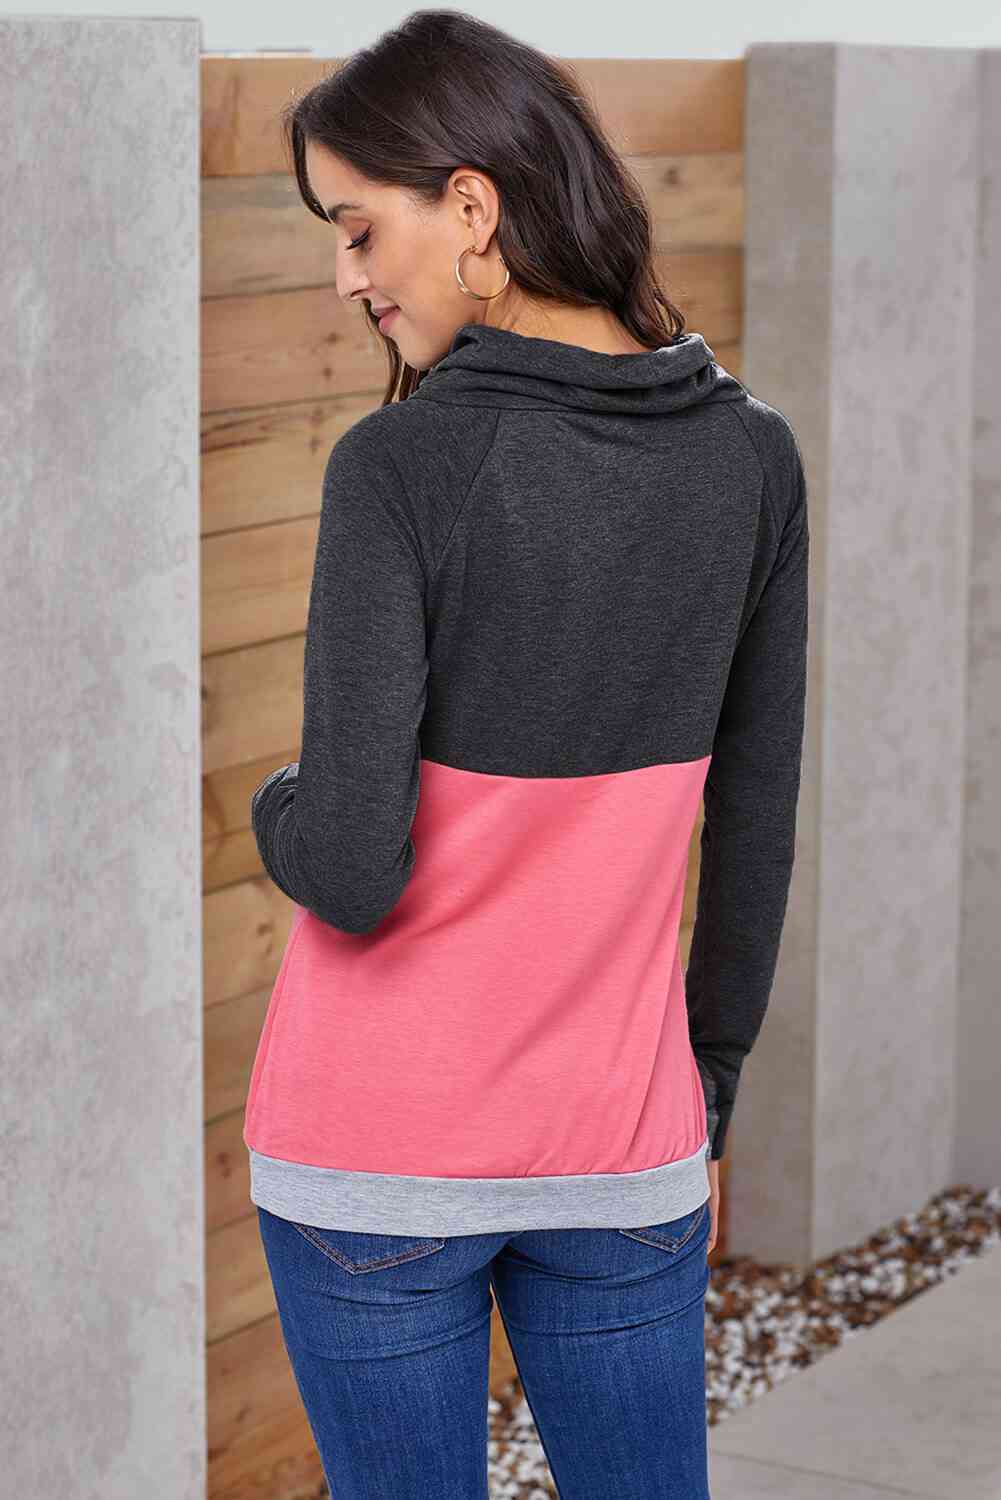 Color Block Raglan Sleeve Drawstring Sweatshirt (5Colors)  Krazy Heart Designs Boutique   